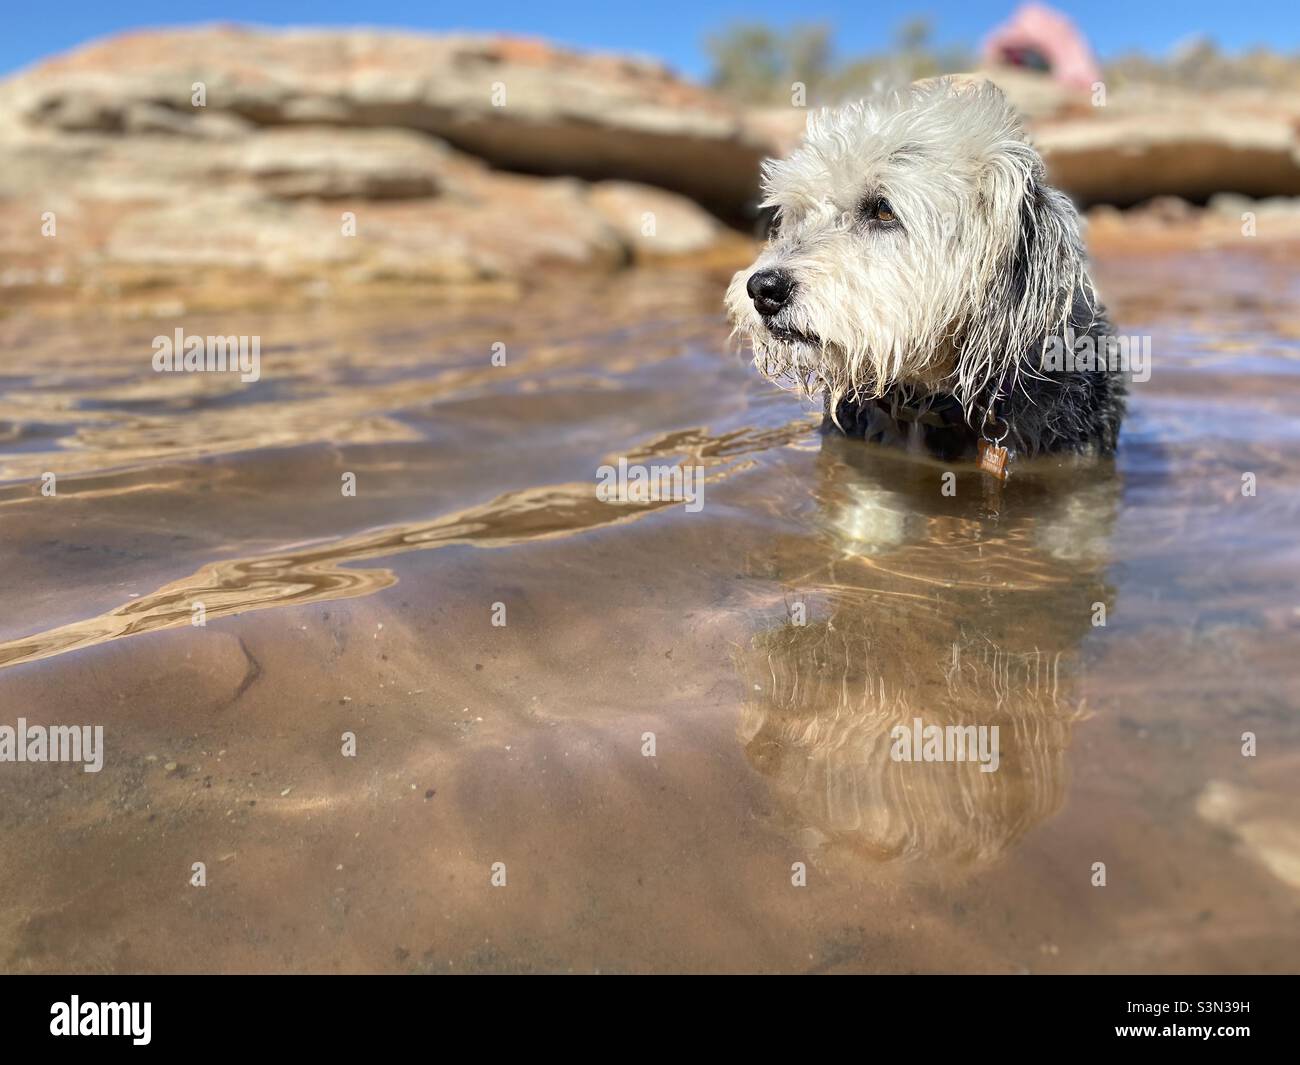 Cane scruffy in un lago, campeggio, deserto Foto Stock